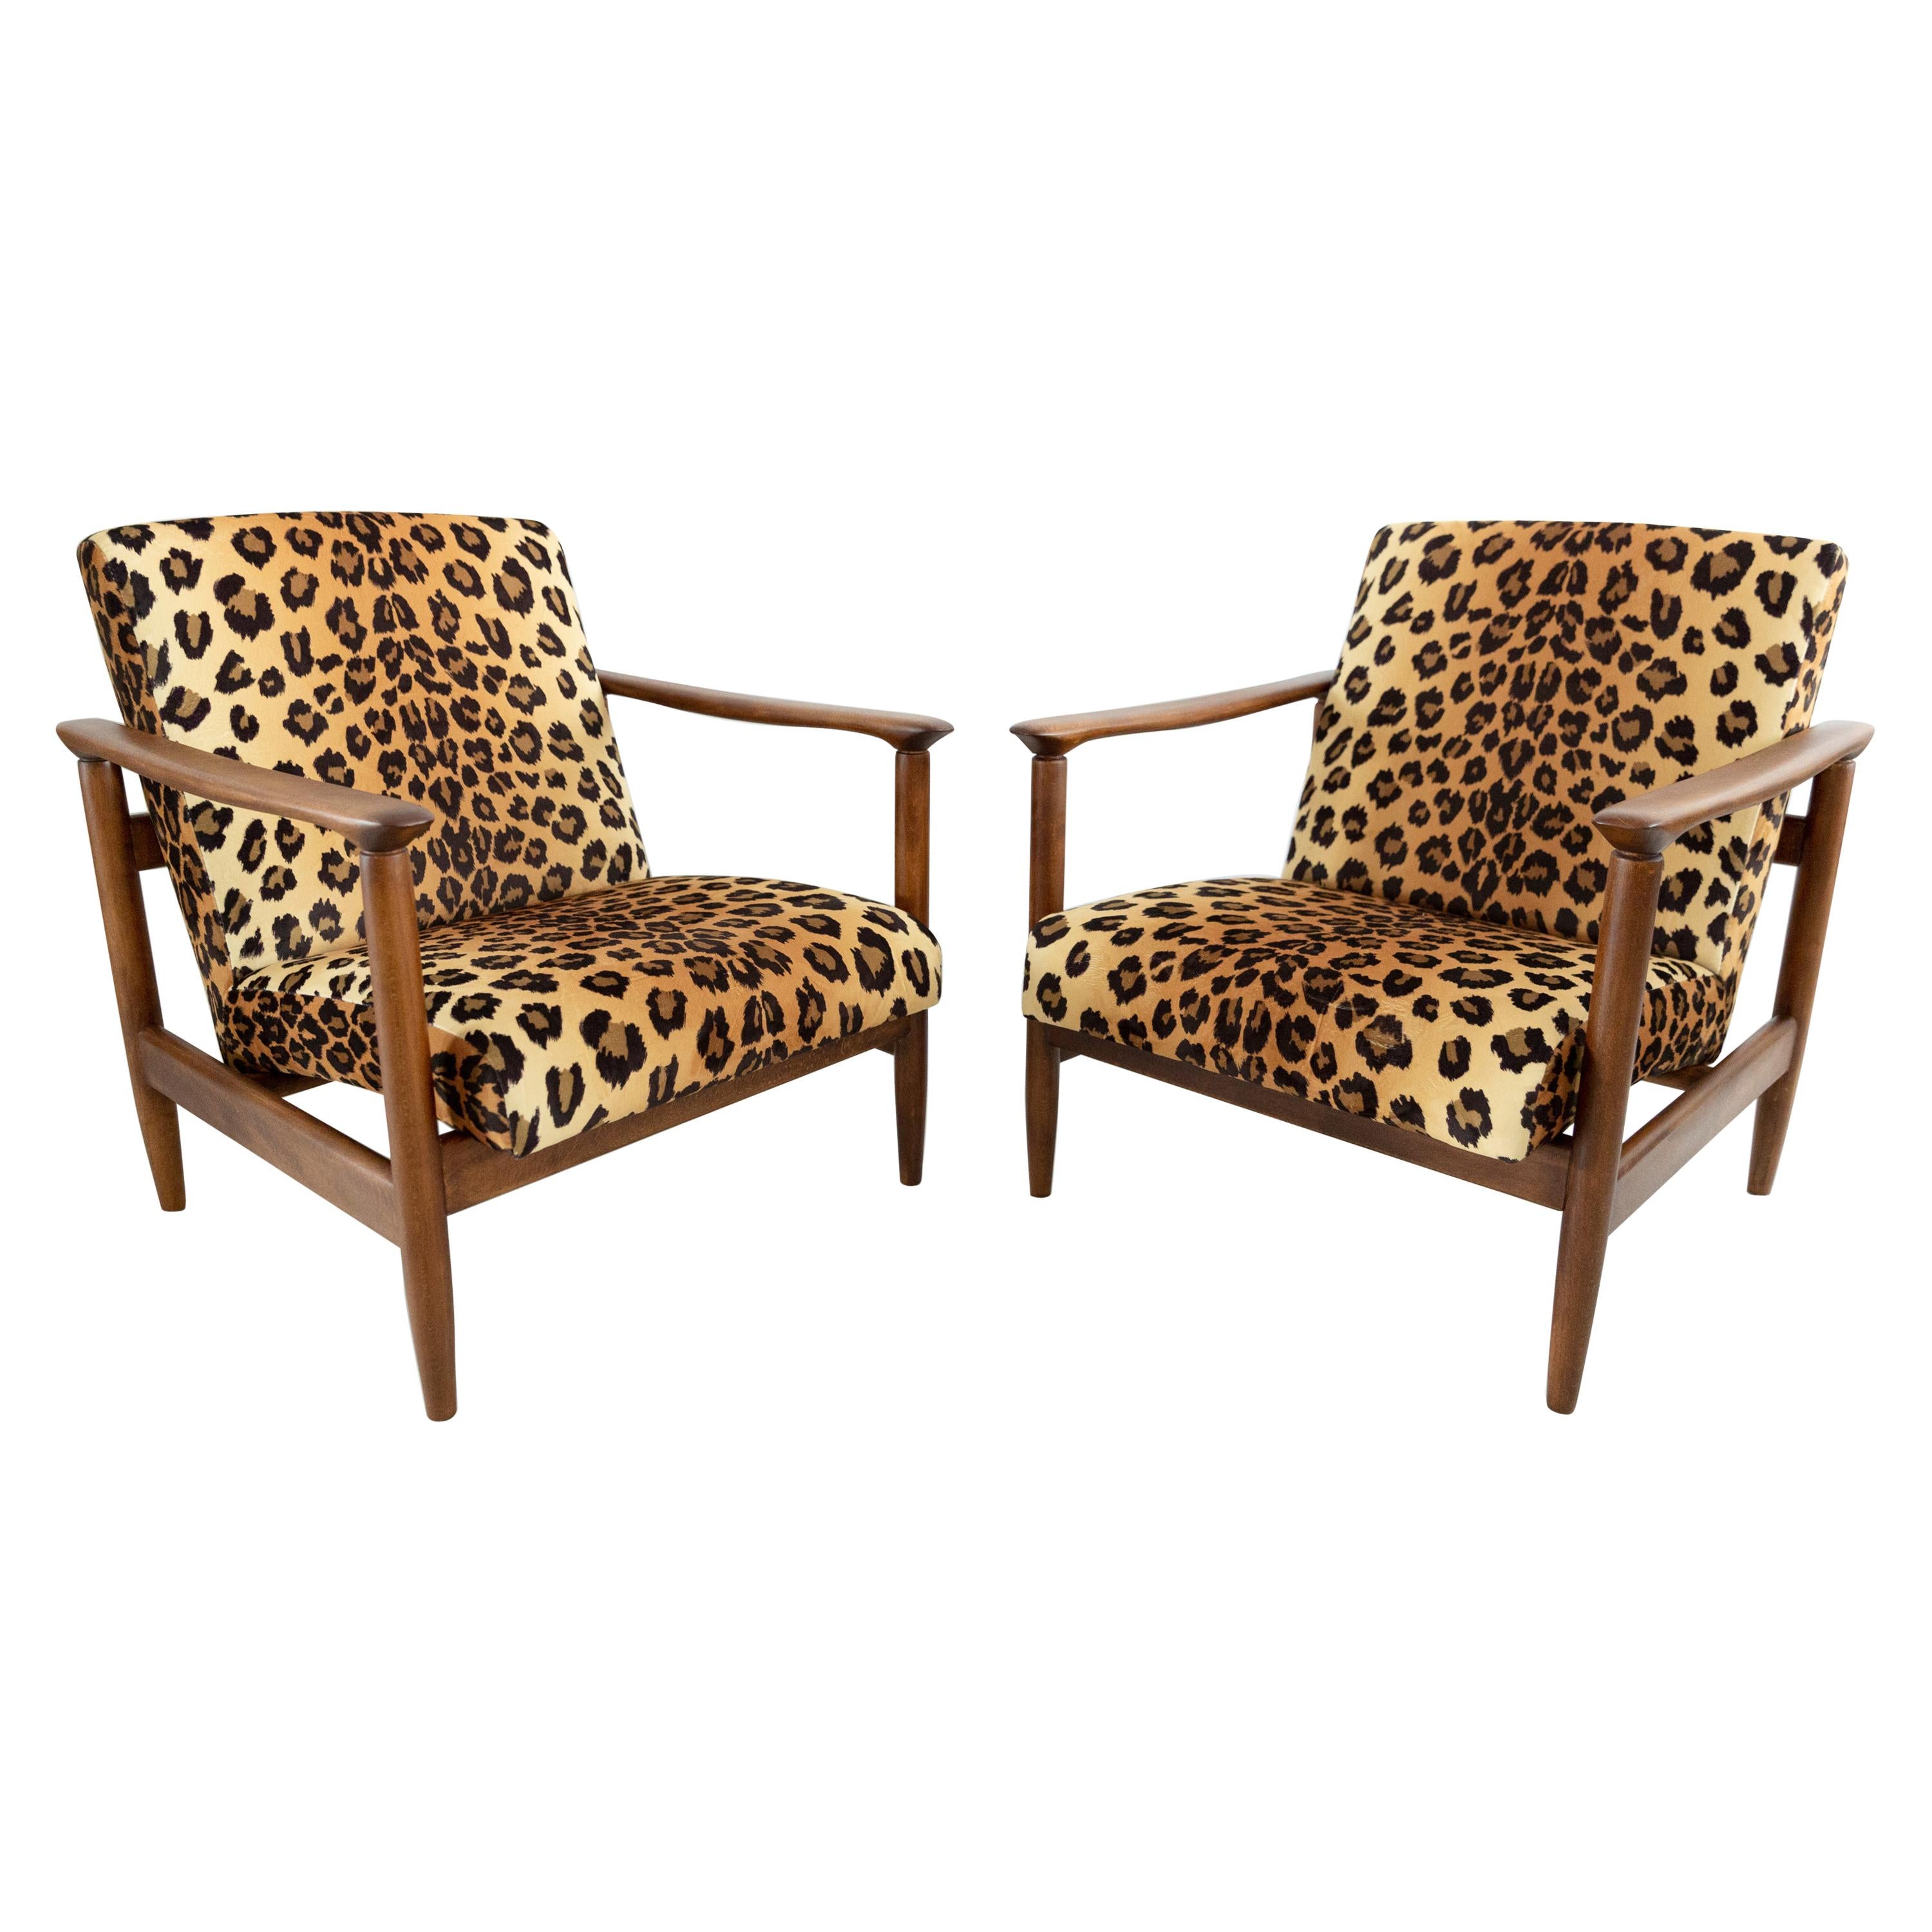 Set aus zwei Sesseln aus Samt mit Leopardenmuster, Edmund Homa, GFM-142, 1960er Jahre, Polen